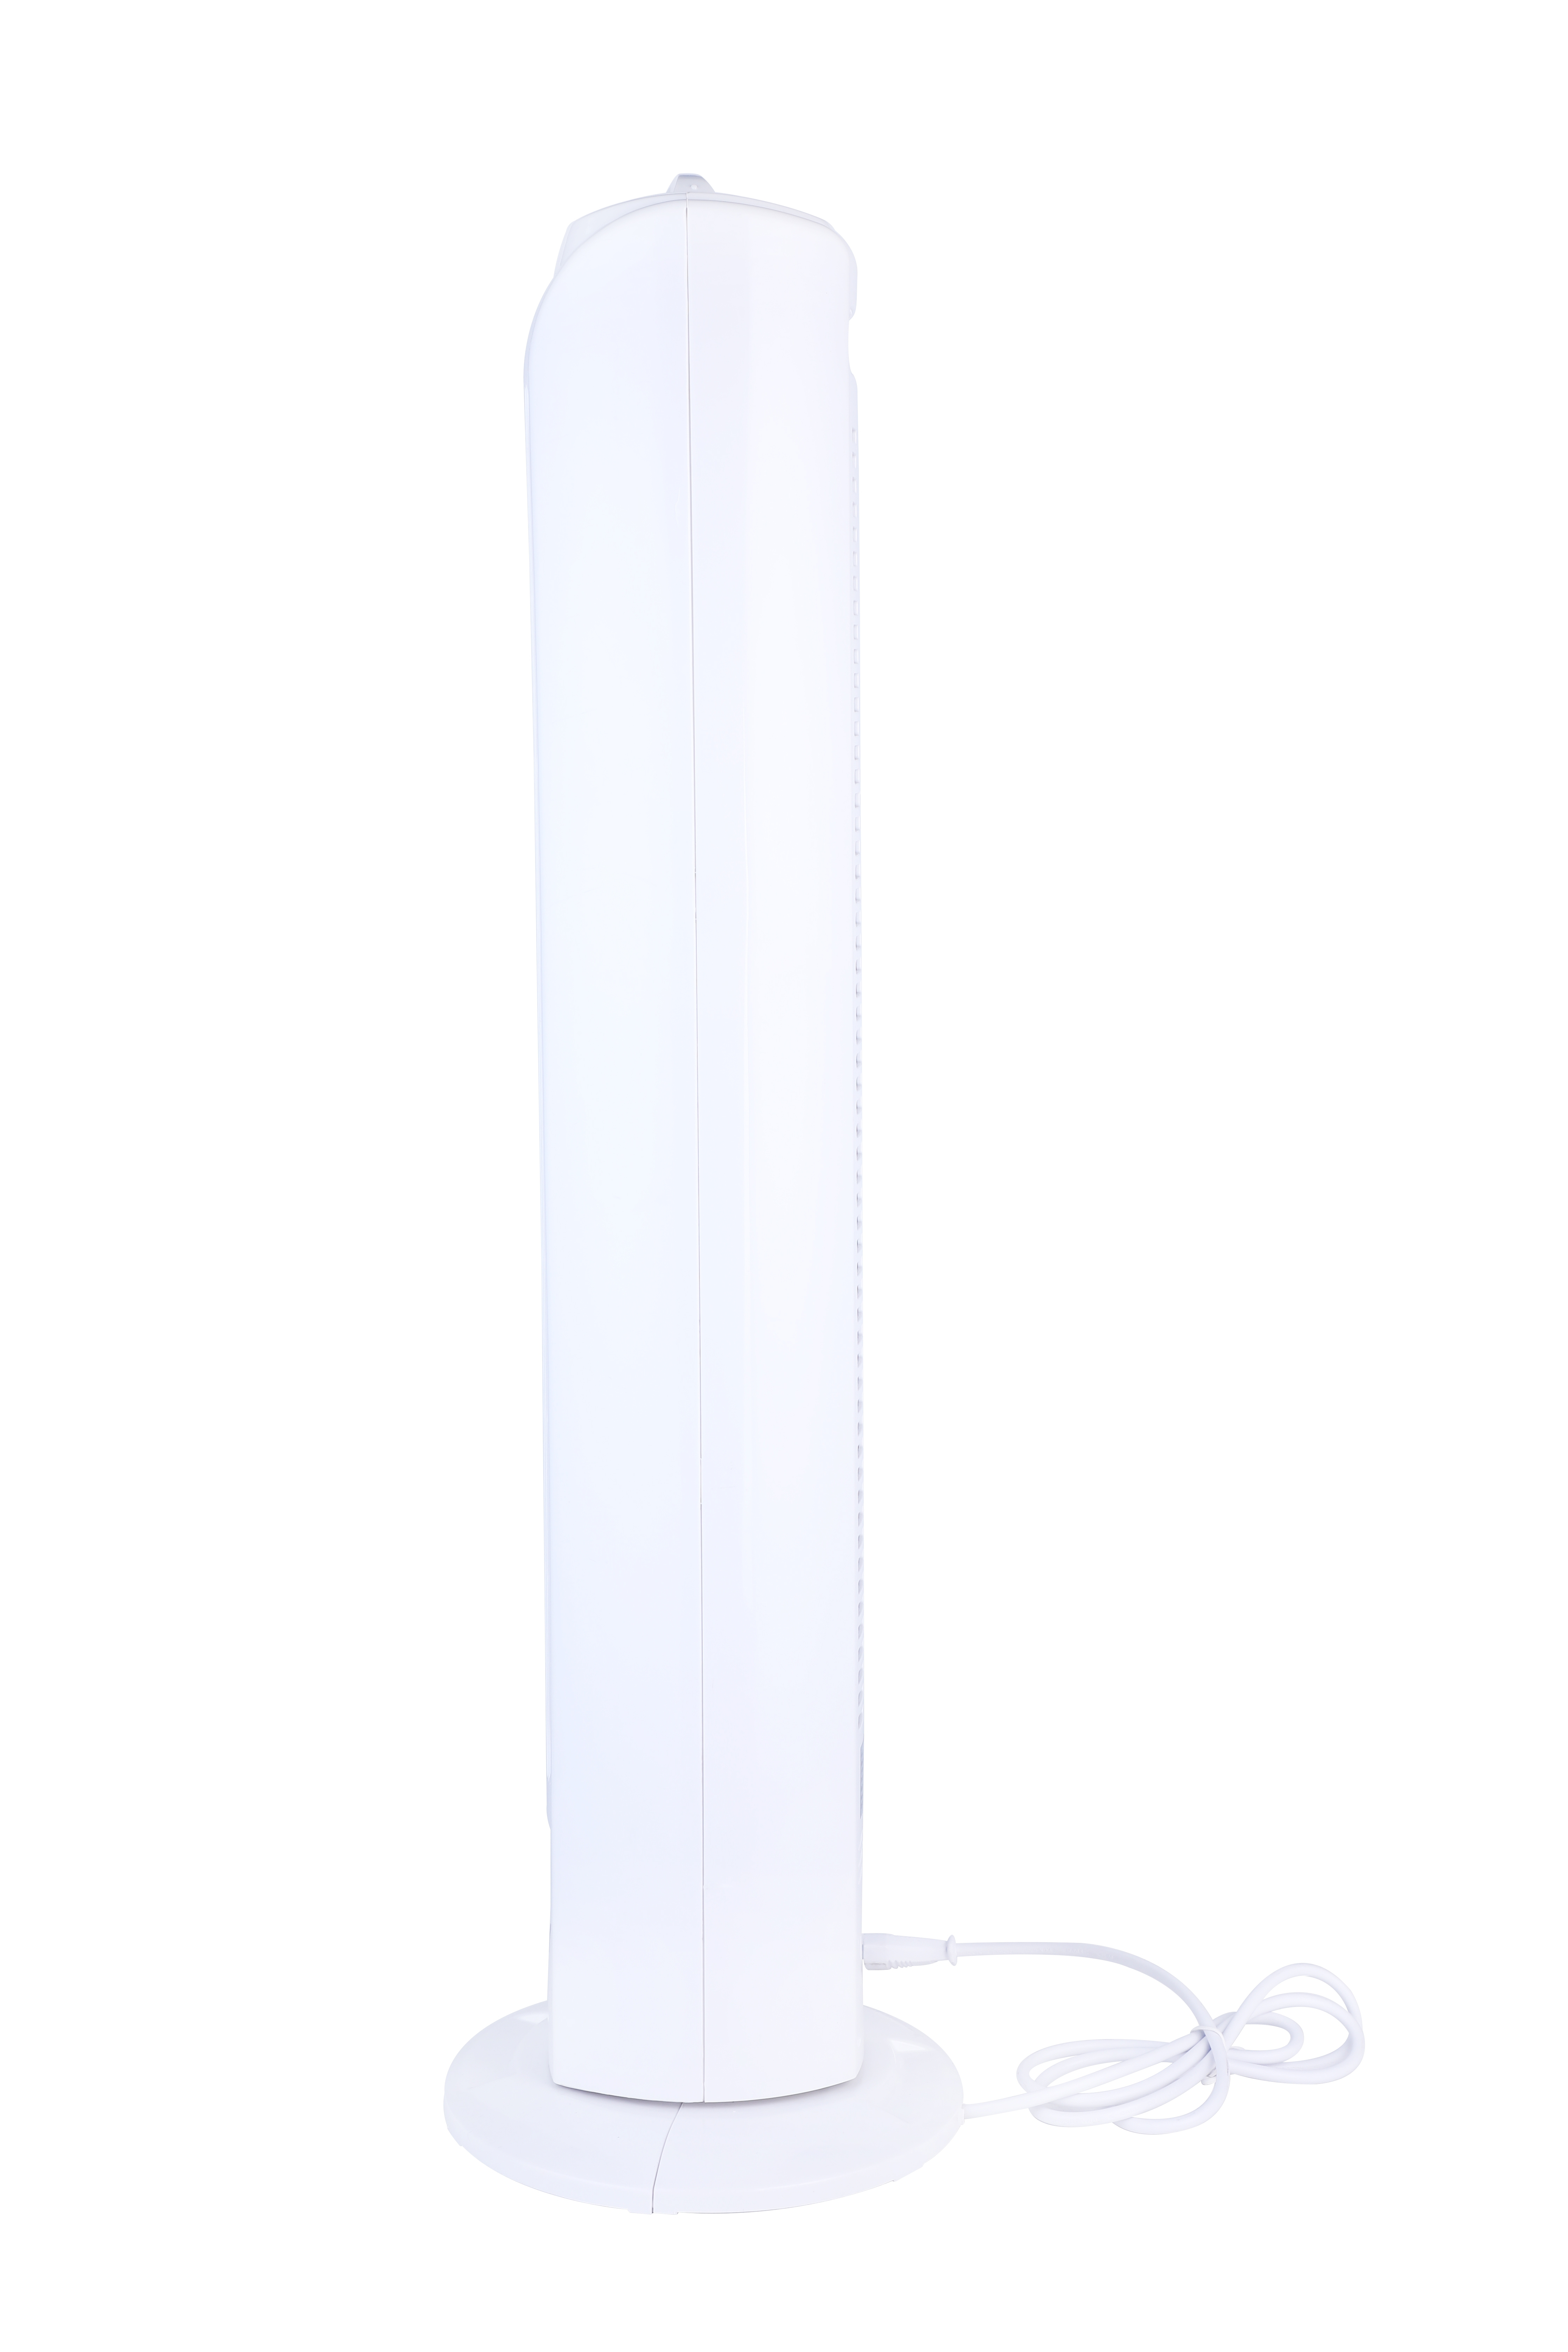 NJOY Ventilator - Turm - Sicher Turm - Geschwindigkeiten - - 50W Weiss - Superkuehlung Turmventilator 3 - Weiß